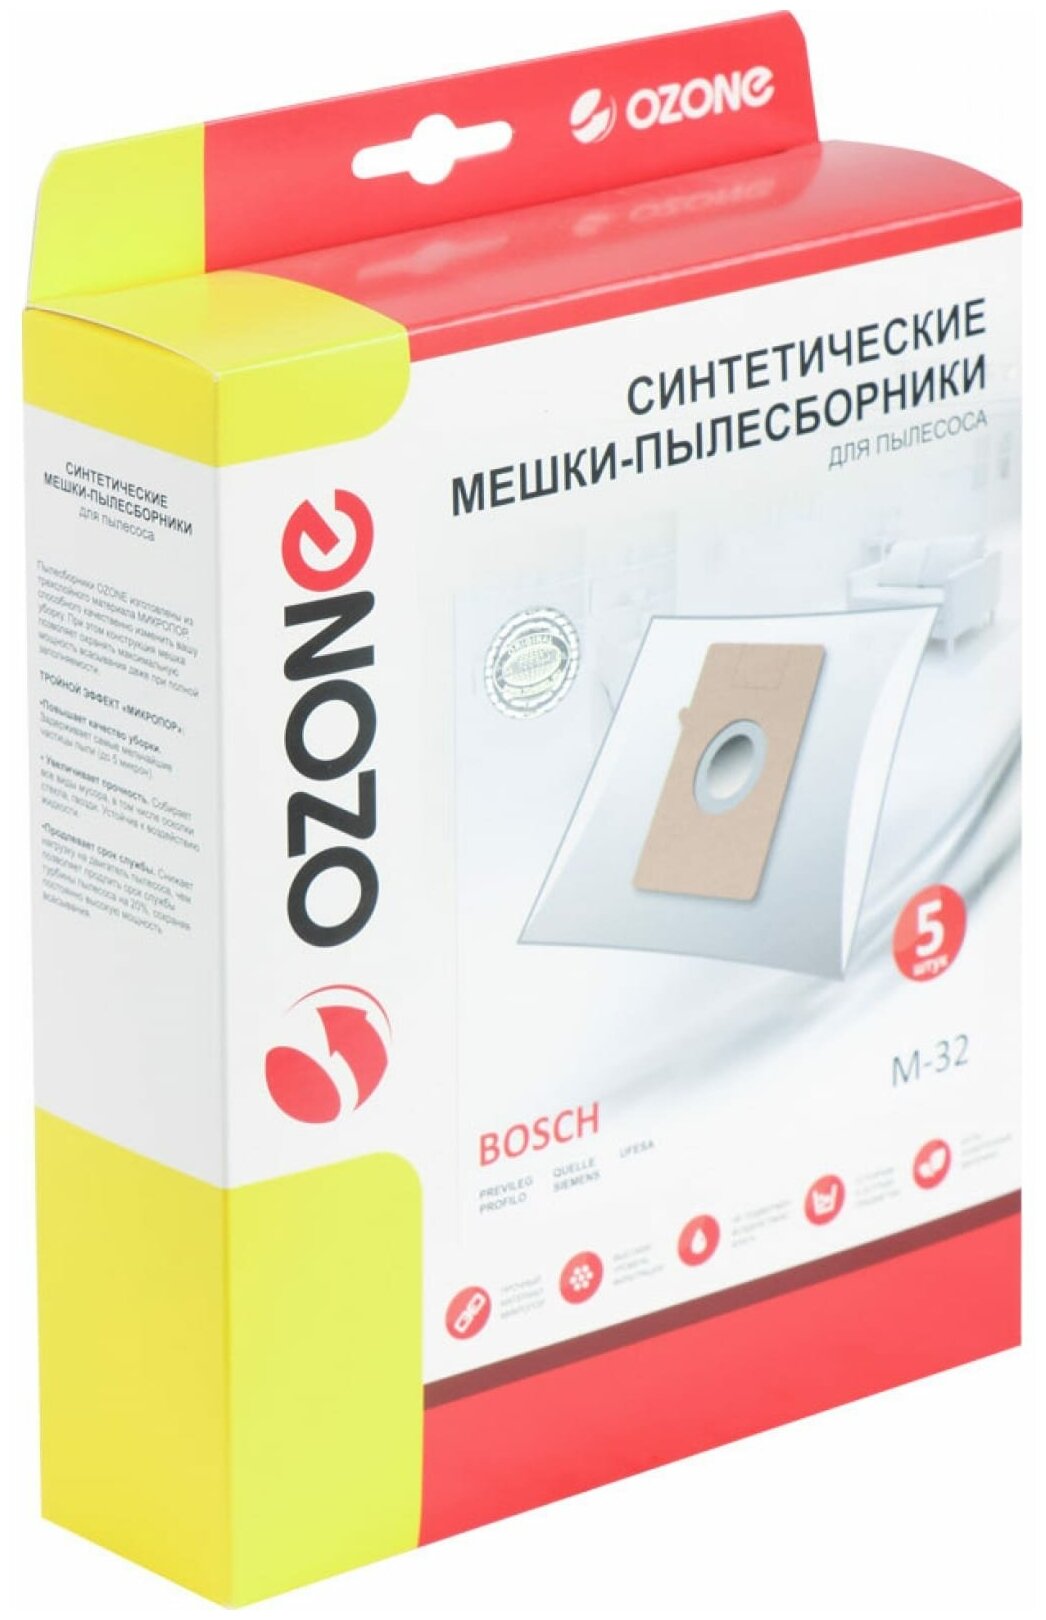 M-32 Мешки-пылесборники Ozone синтетические для пылесоса, 5 шт + микрофильтр - фотография № 3